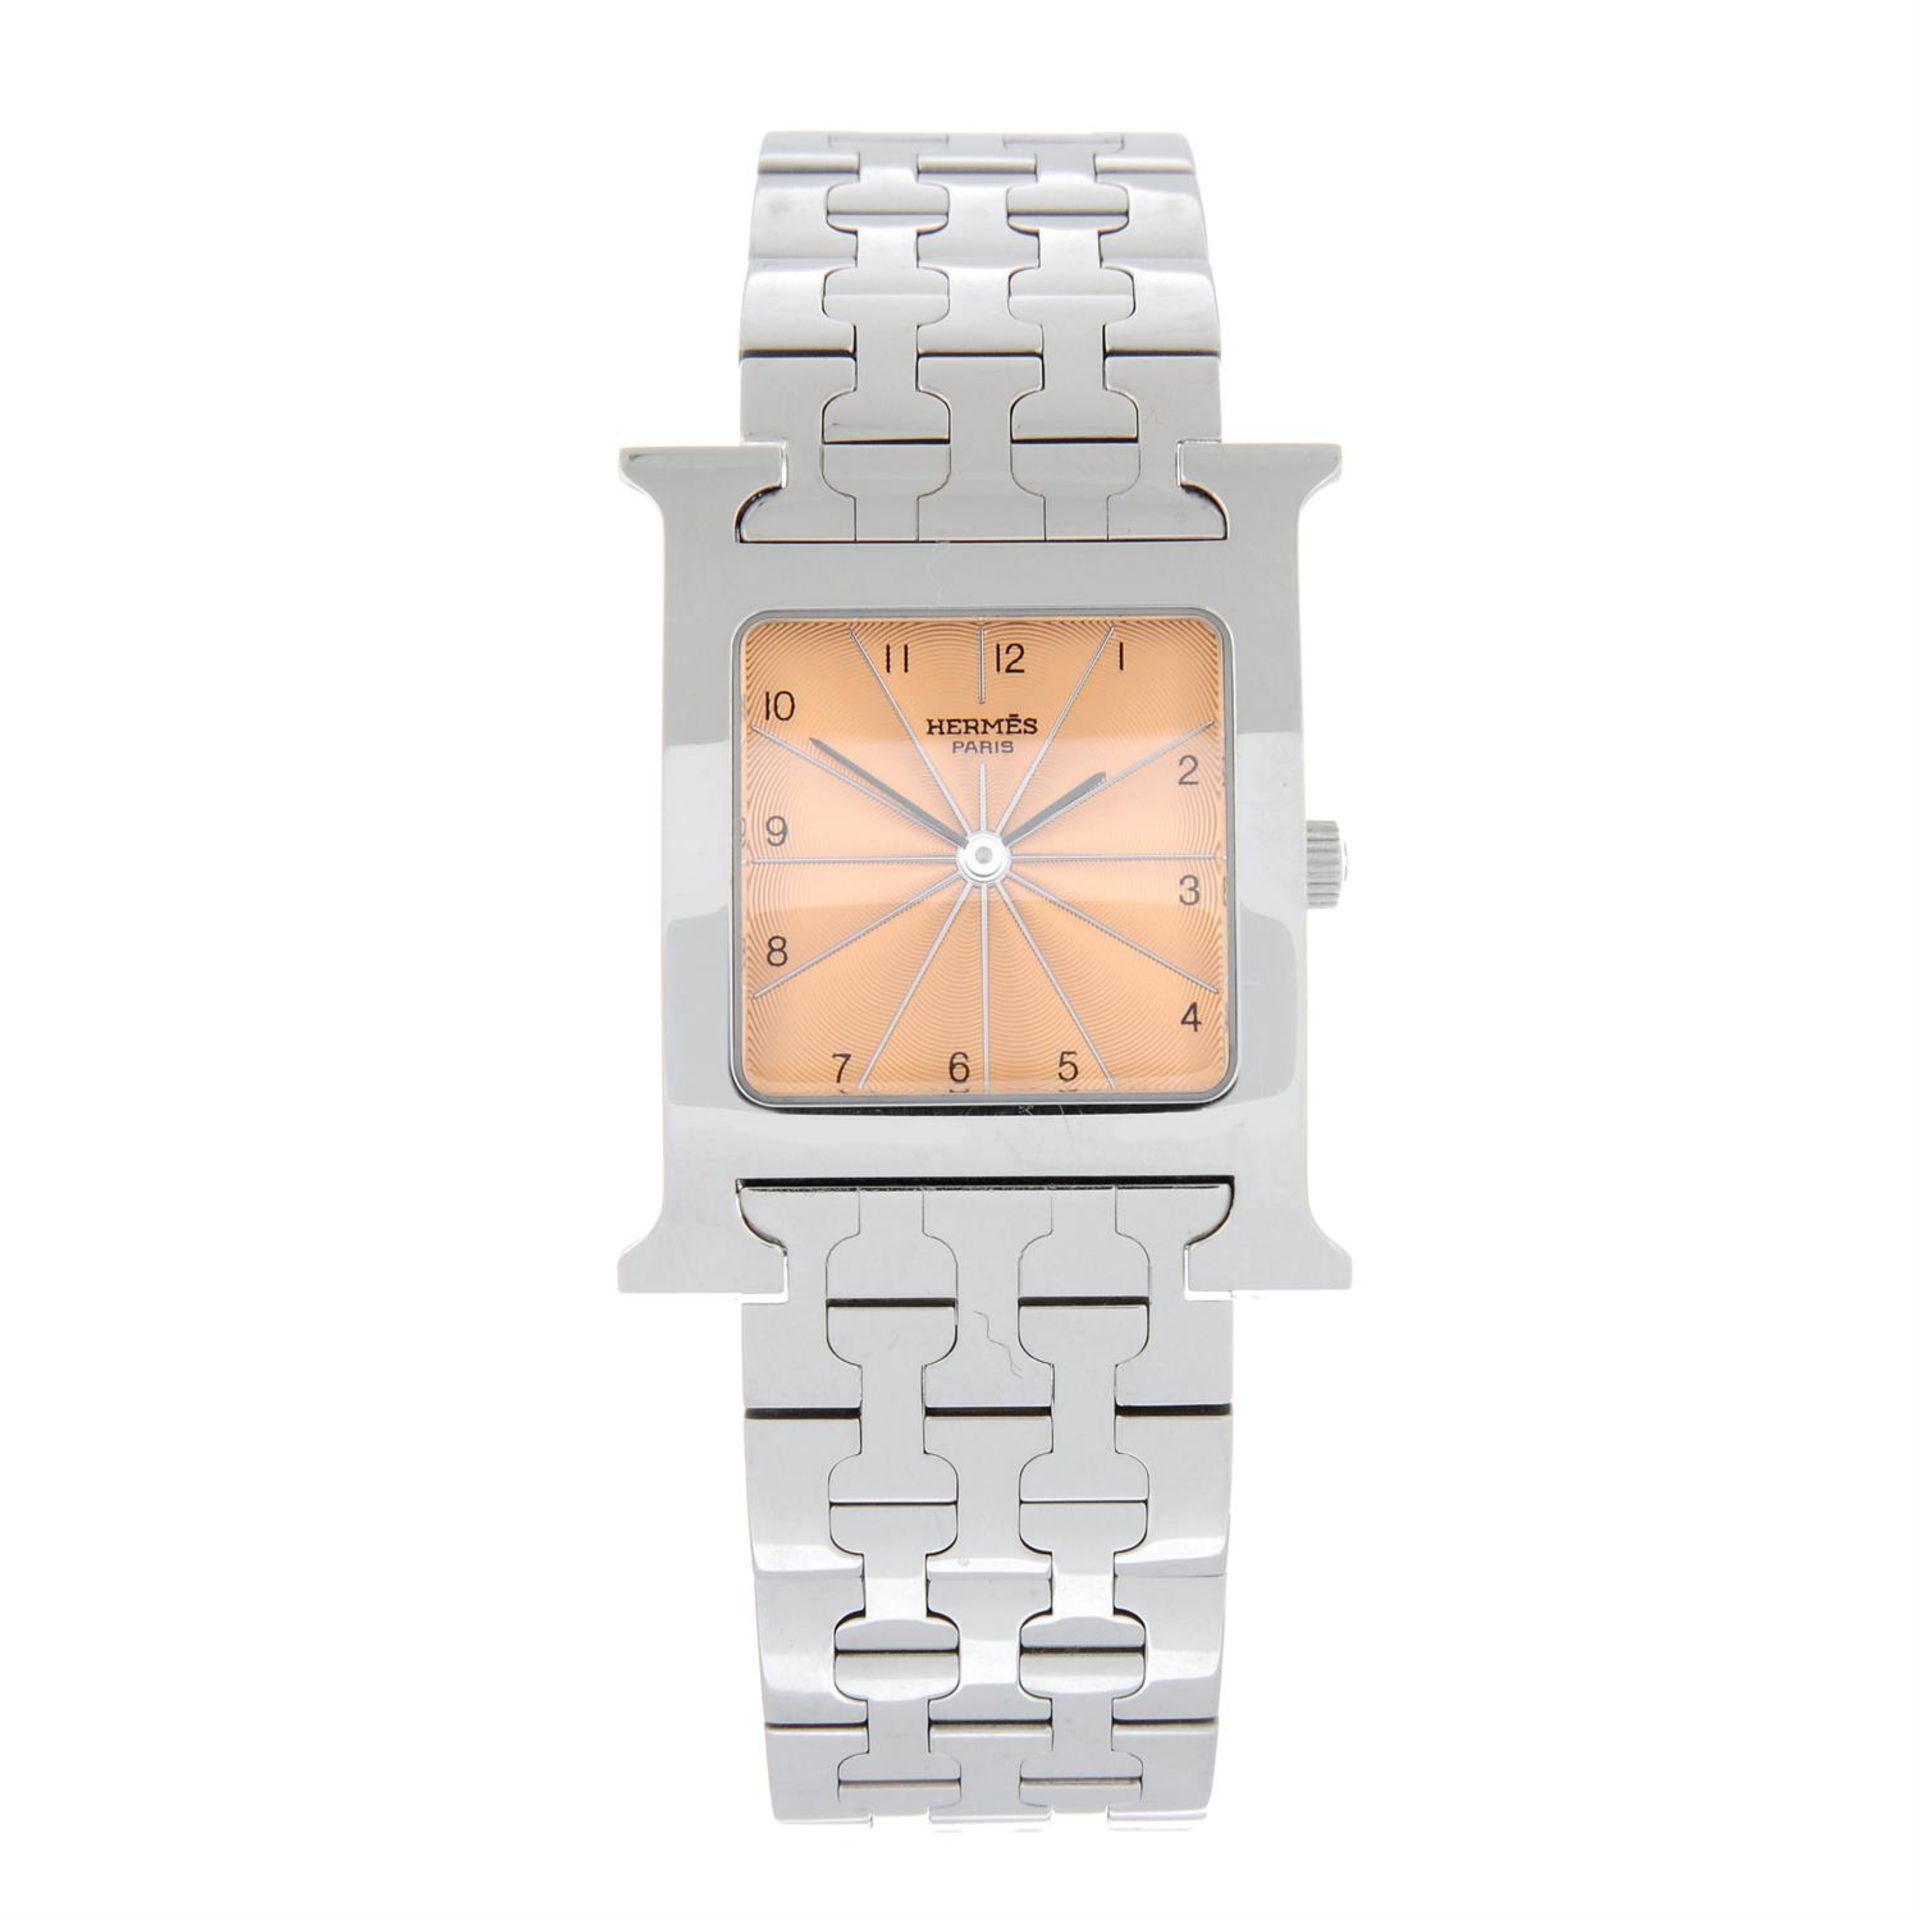 HERMÈS - a stainless steel Heure bracelet watch, 26x26mm.